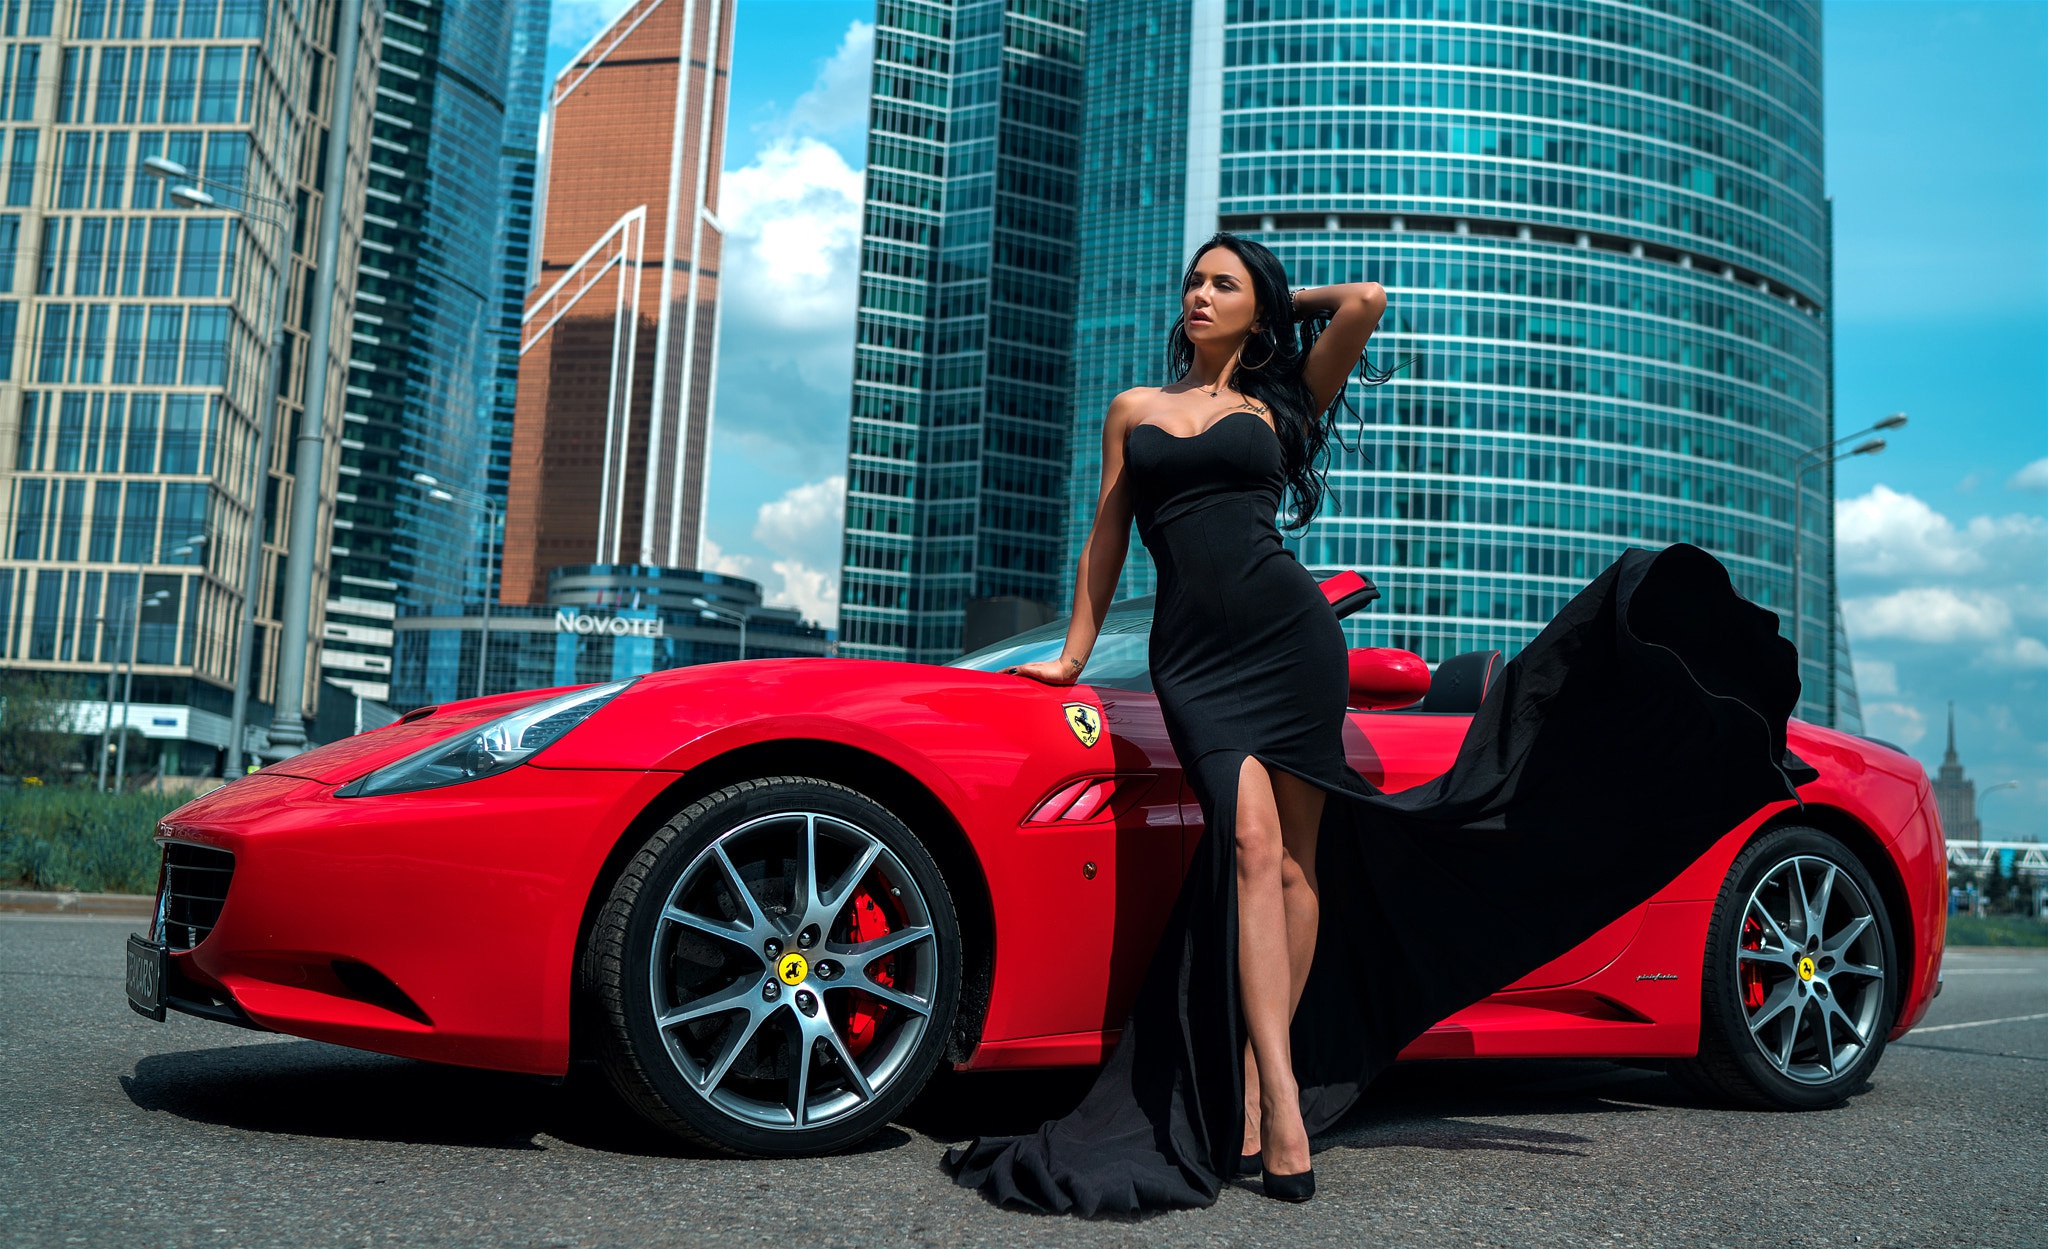 Download mobile wallpaper Ferrari, Car, Model, Women, Black Hair, Black Dress, Girls & Cars for free.